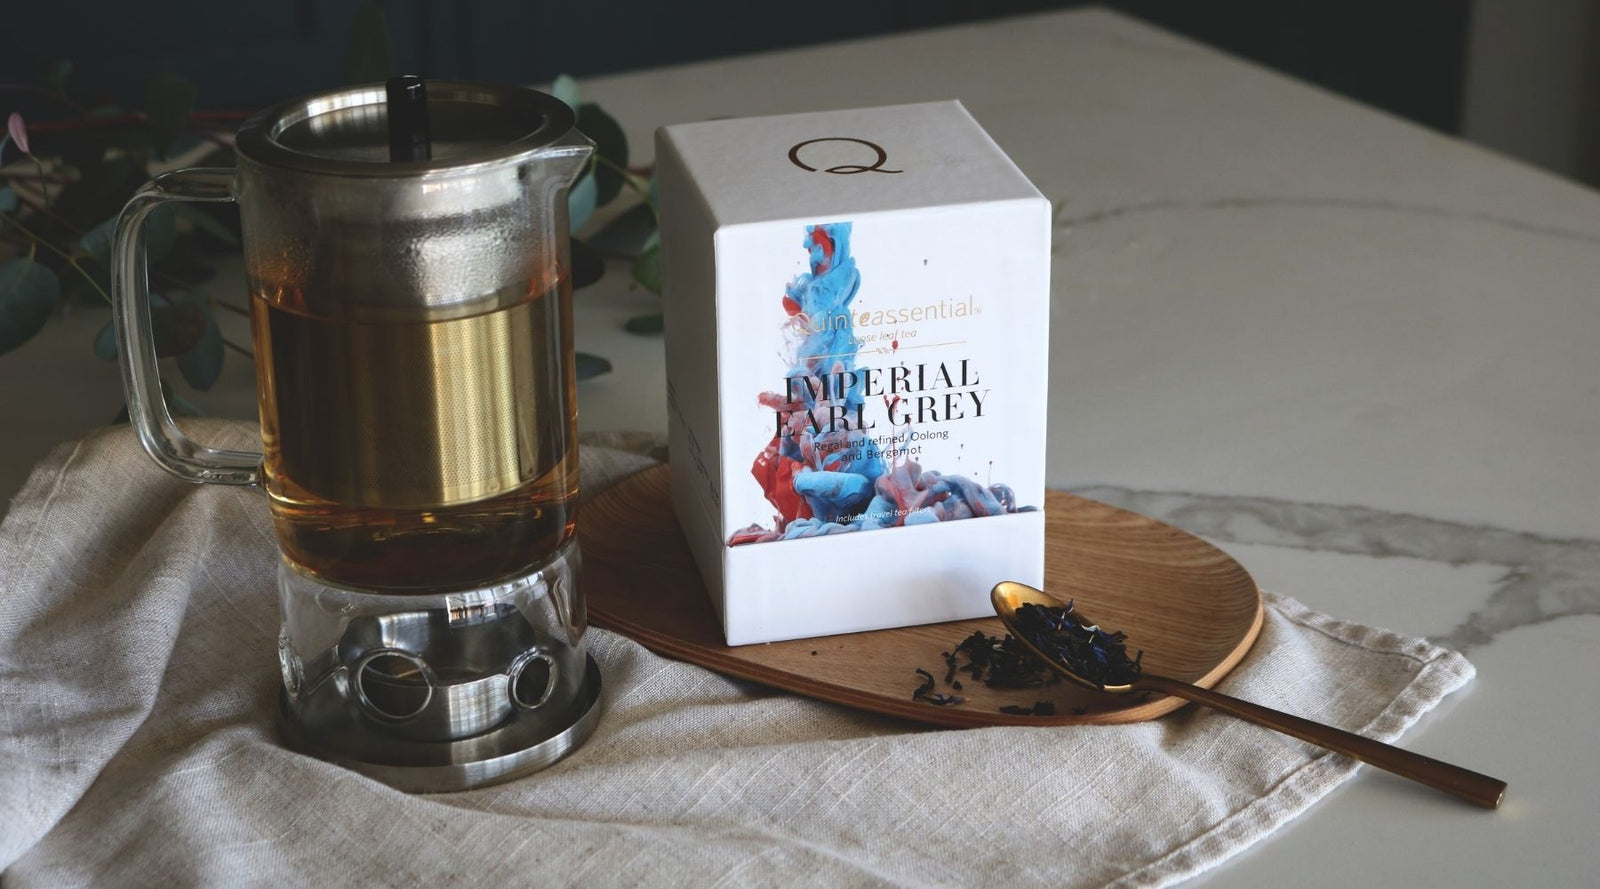 Organic Earl Grey Tea, Earl Grey French Blue